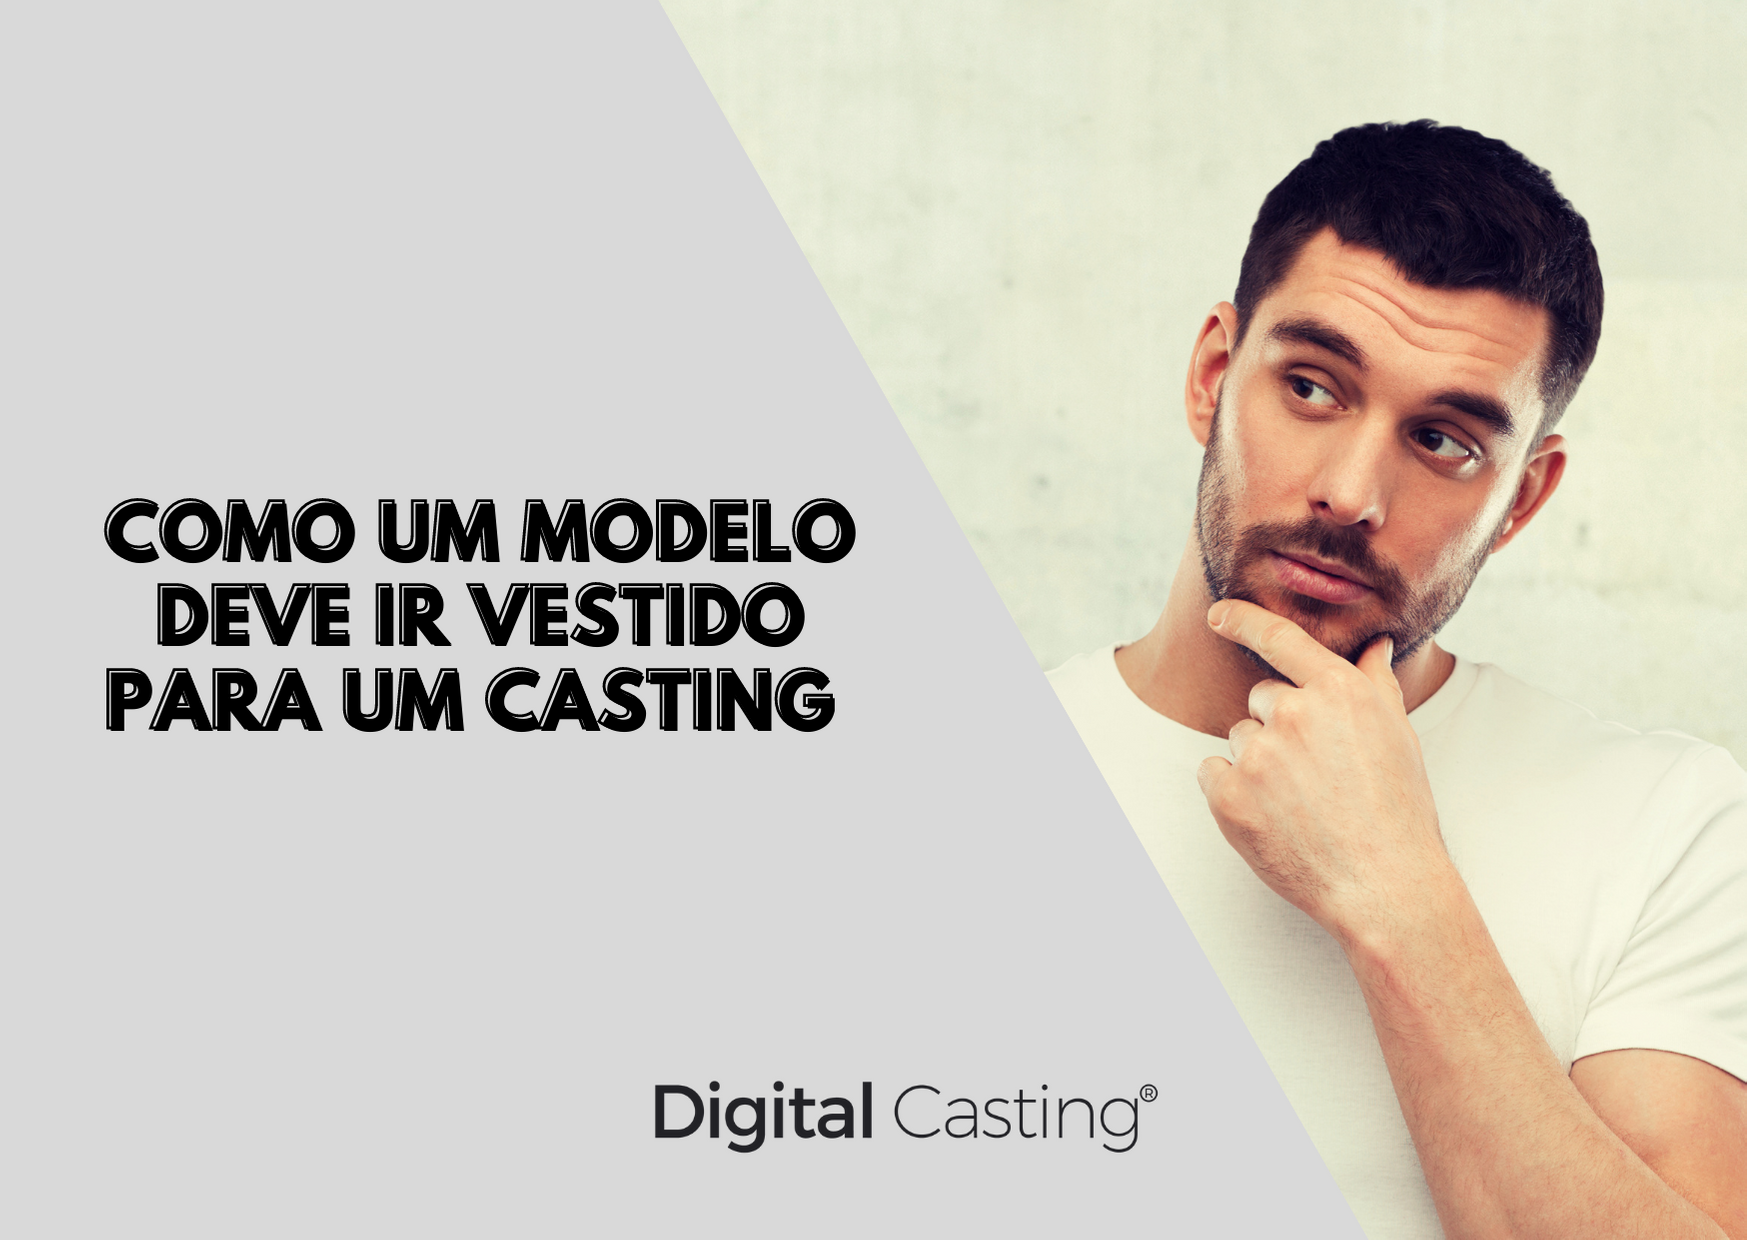 https://digitalcasting.art.br/wp-content/uploads/2021/04/Como-um-modelo-deve-ir-vestido-para-um-Casting.png